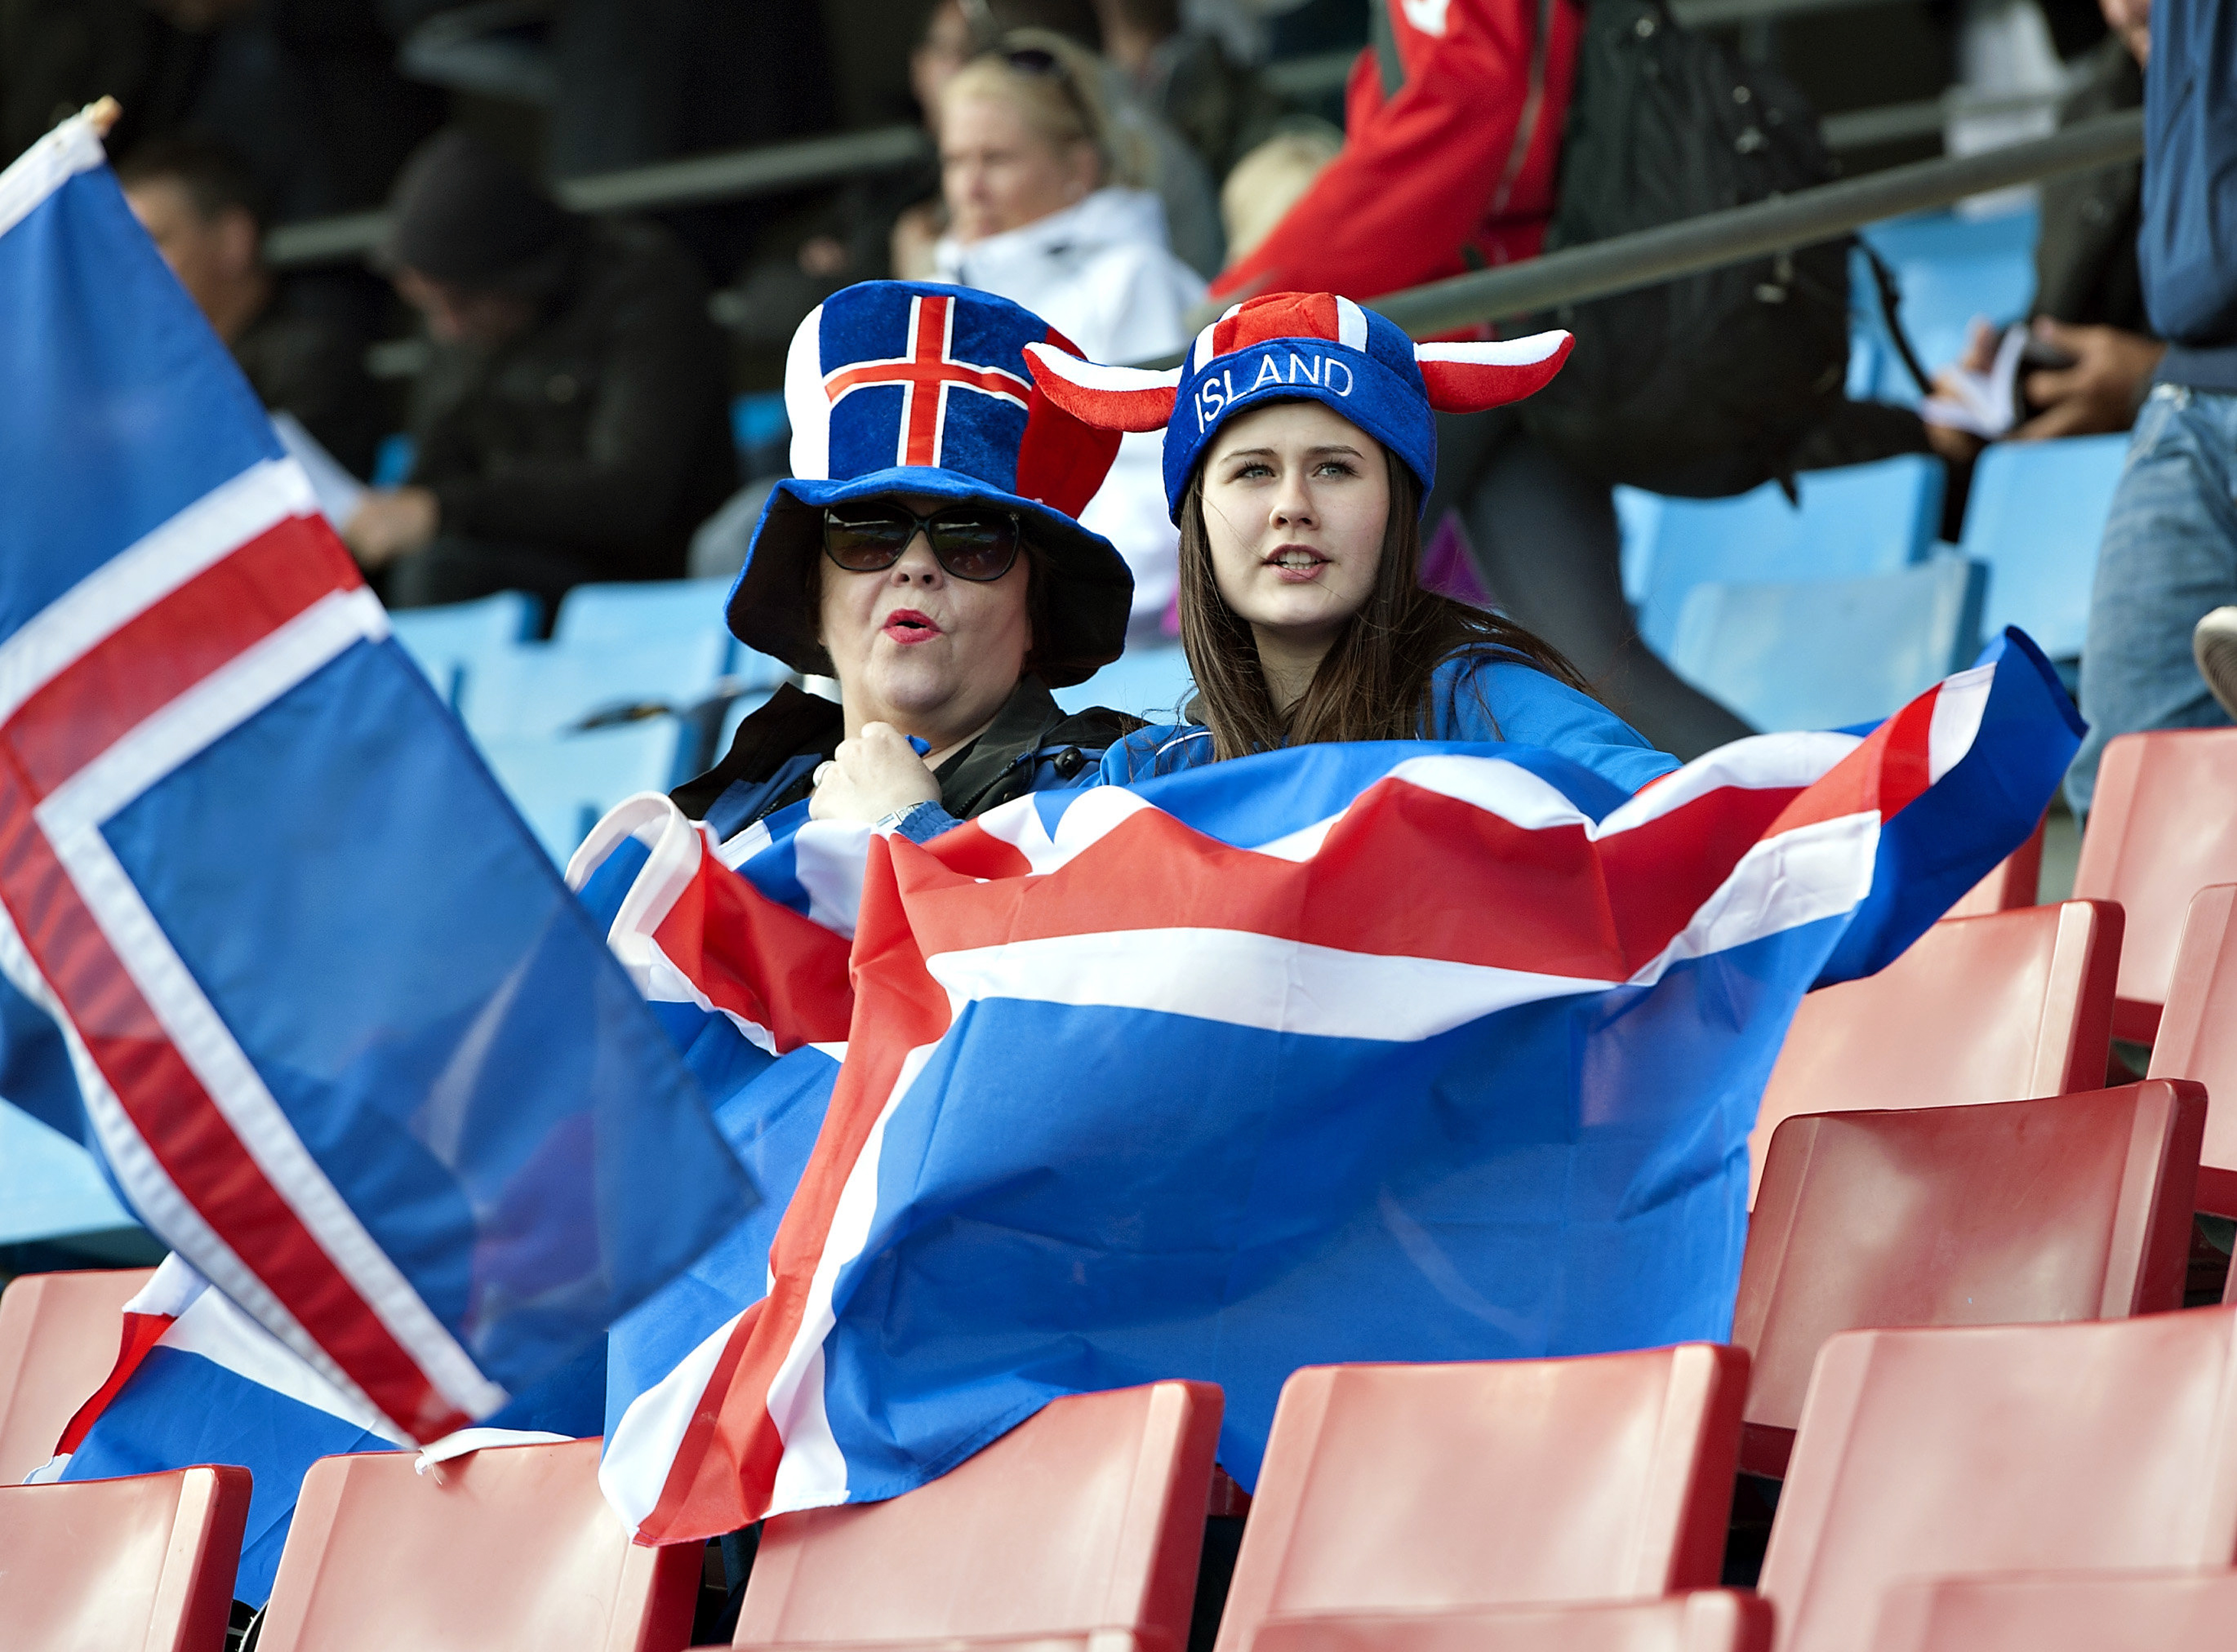 Island streikt und prüft das Vollgeld